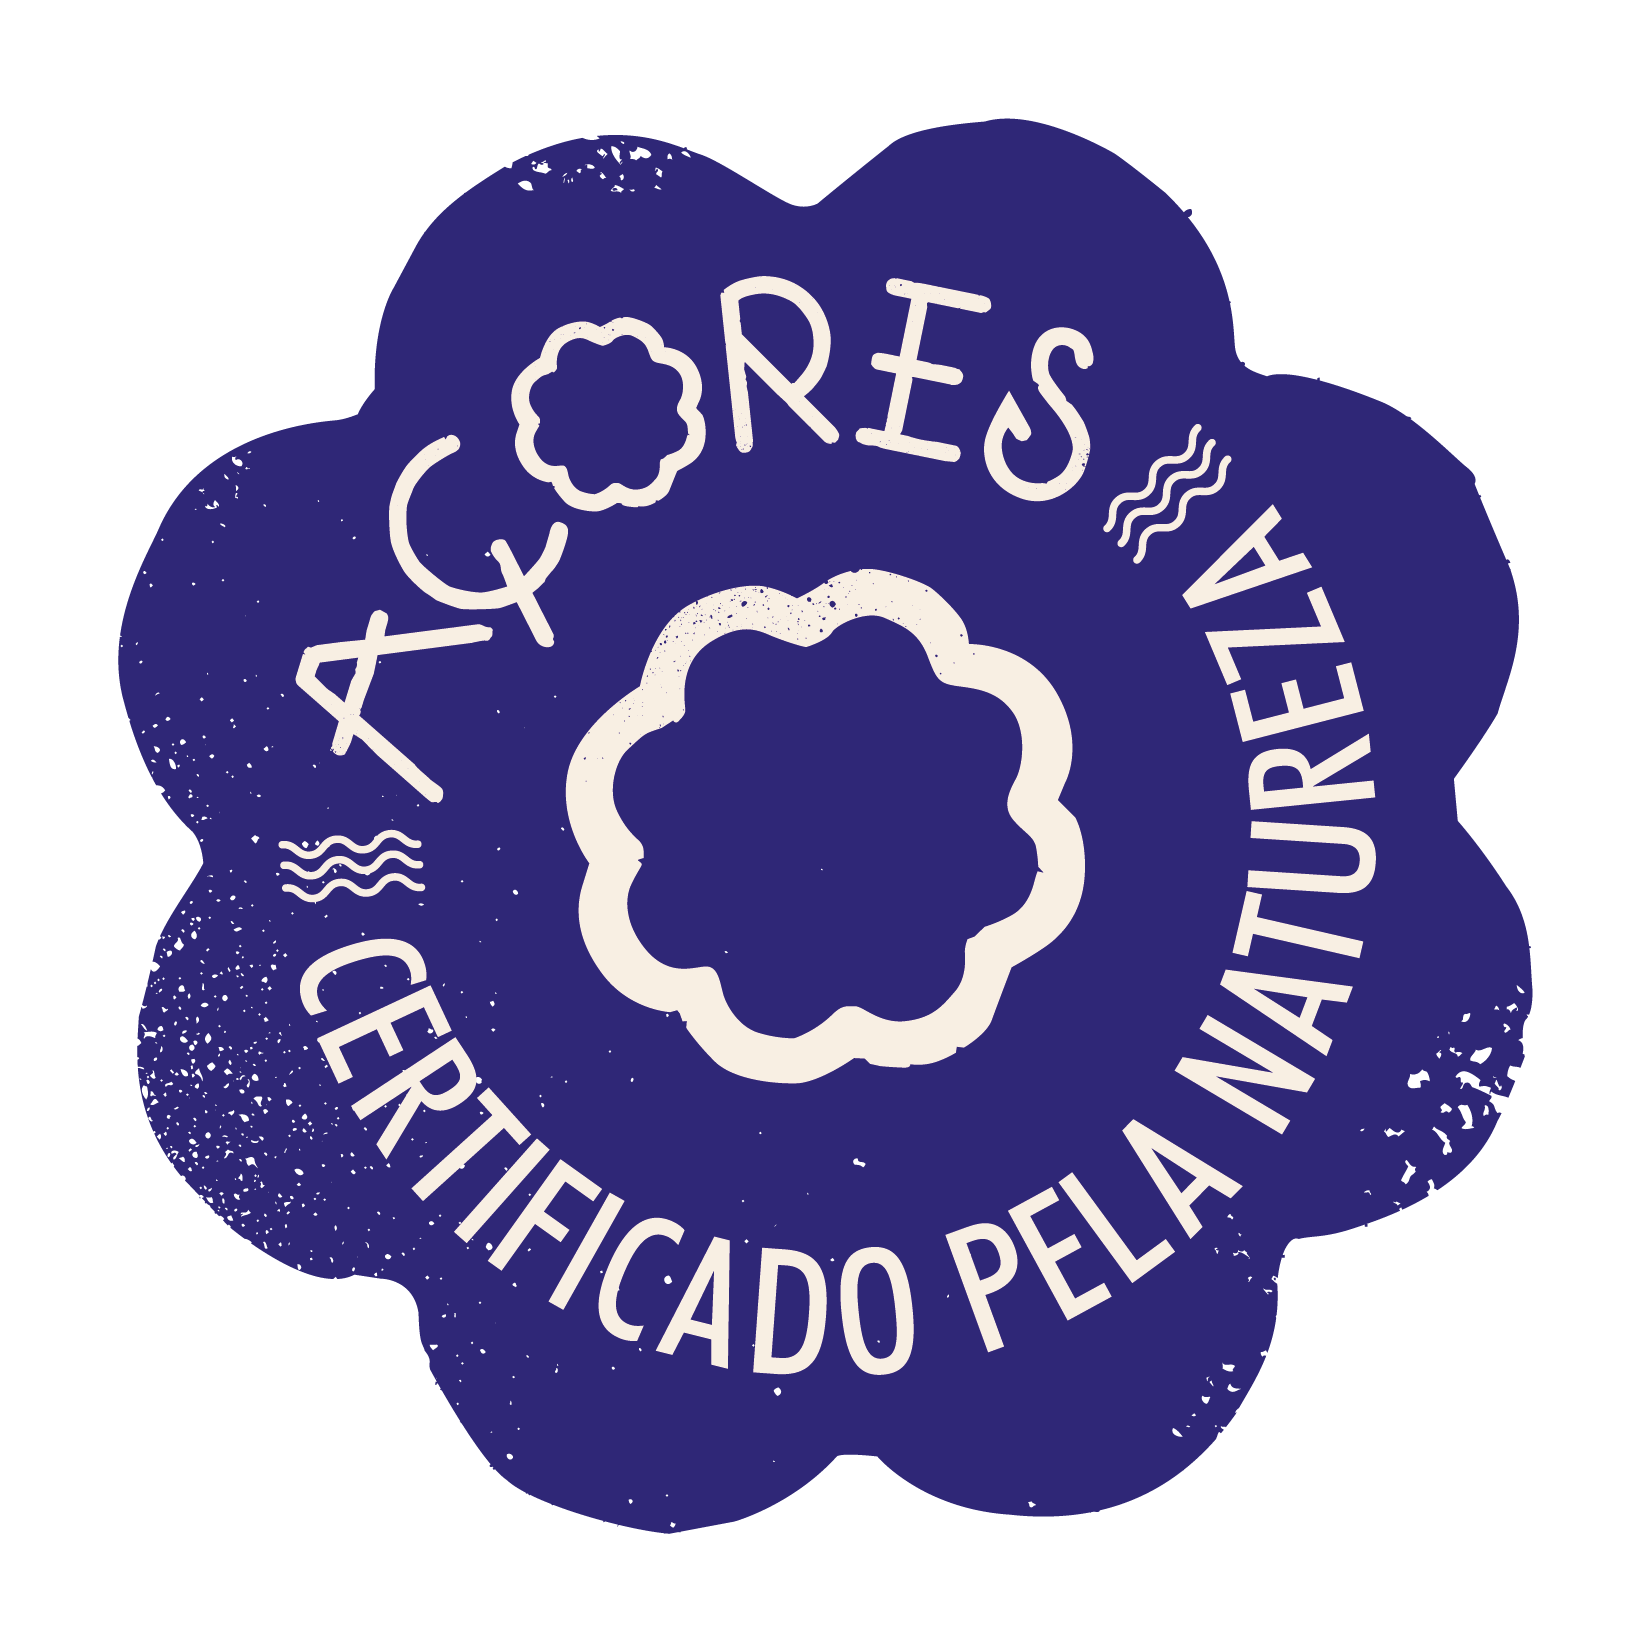 Açores - Certificado pela natureza